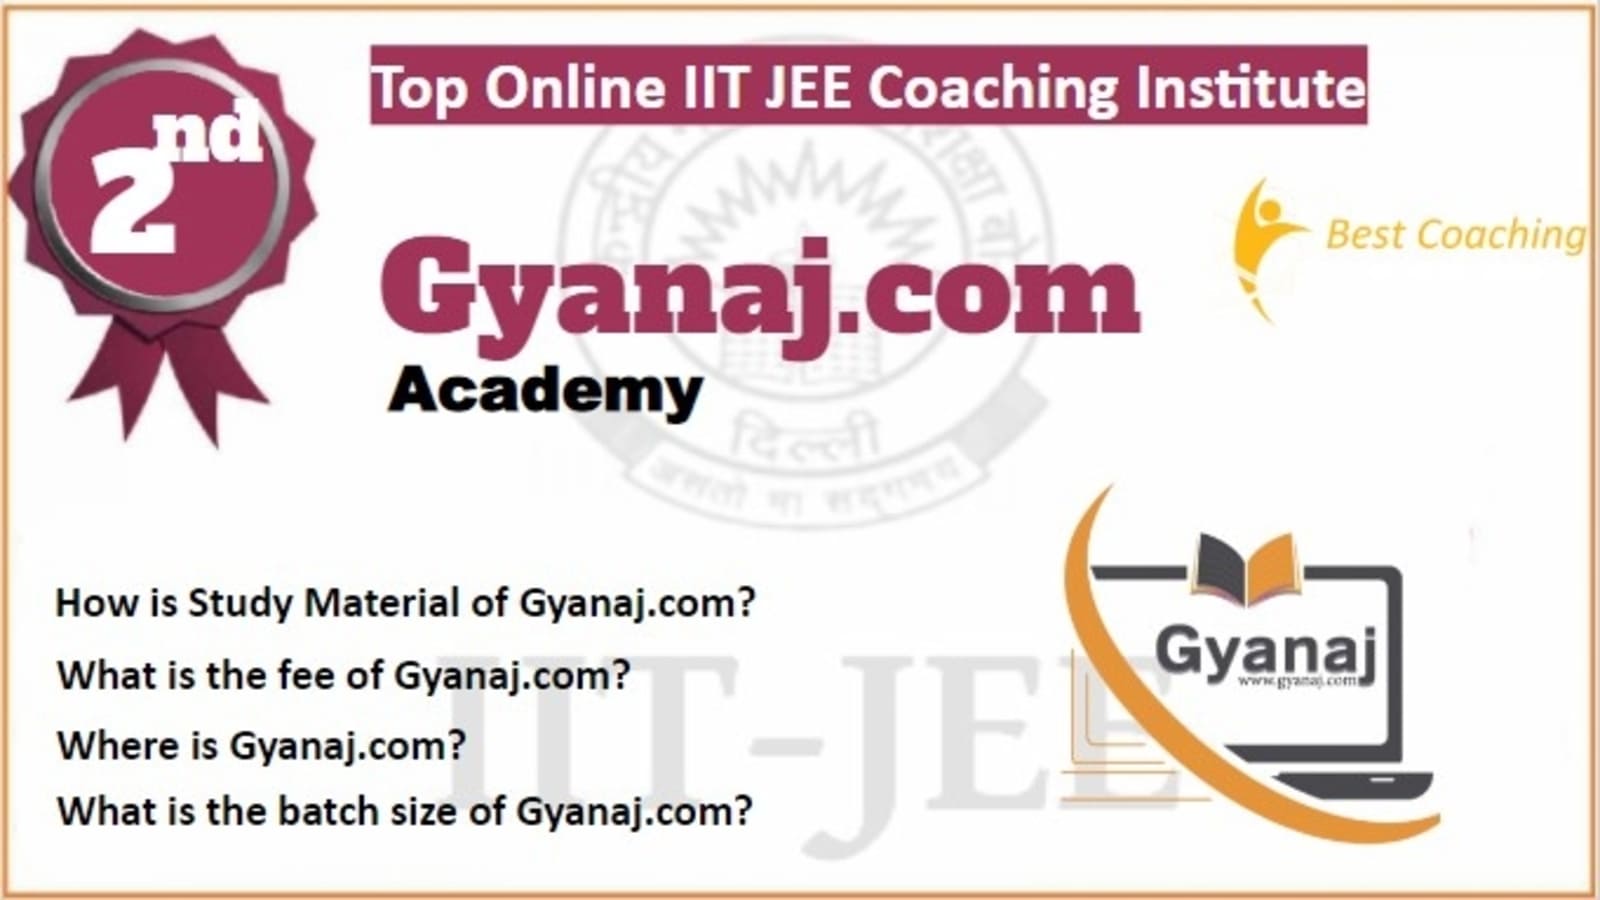 Rank 2 Best Online IIT JEE Coaching